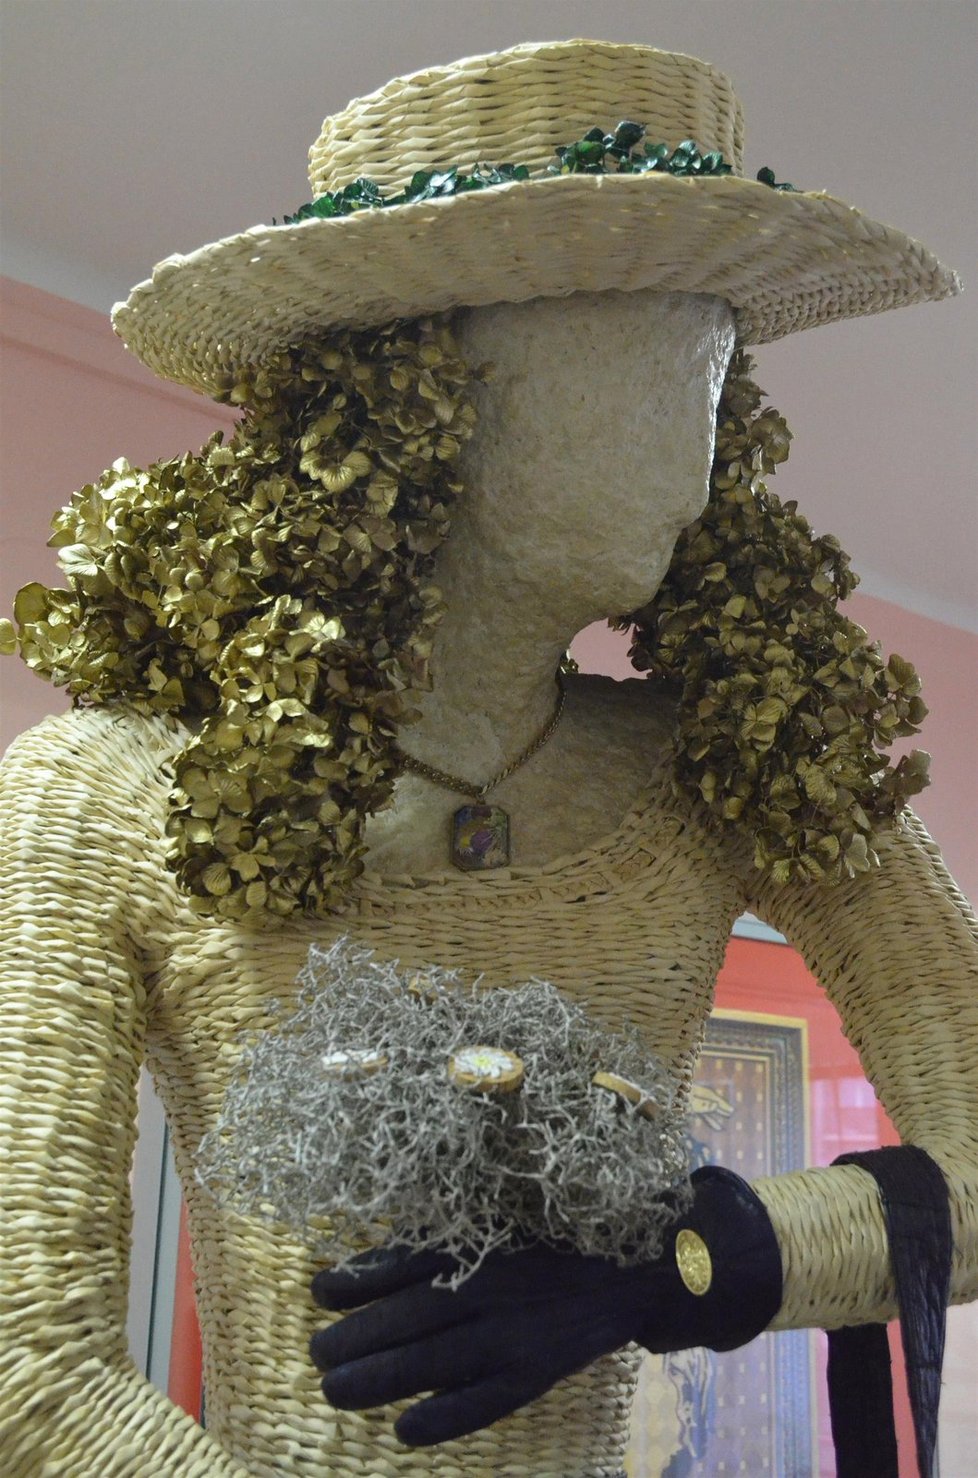 Socha Hortenzie figuruje v České knize rekordů jako socha oblečená do šatů vytvořených z největšího počtu papírových ruliček.